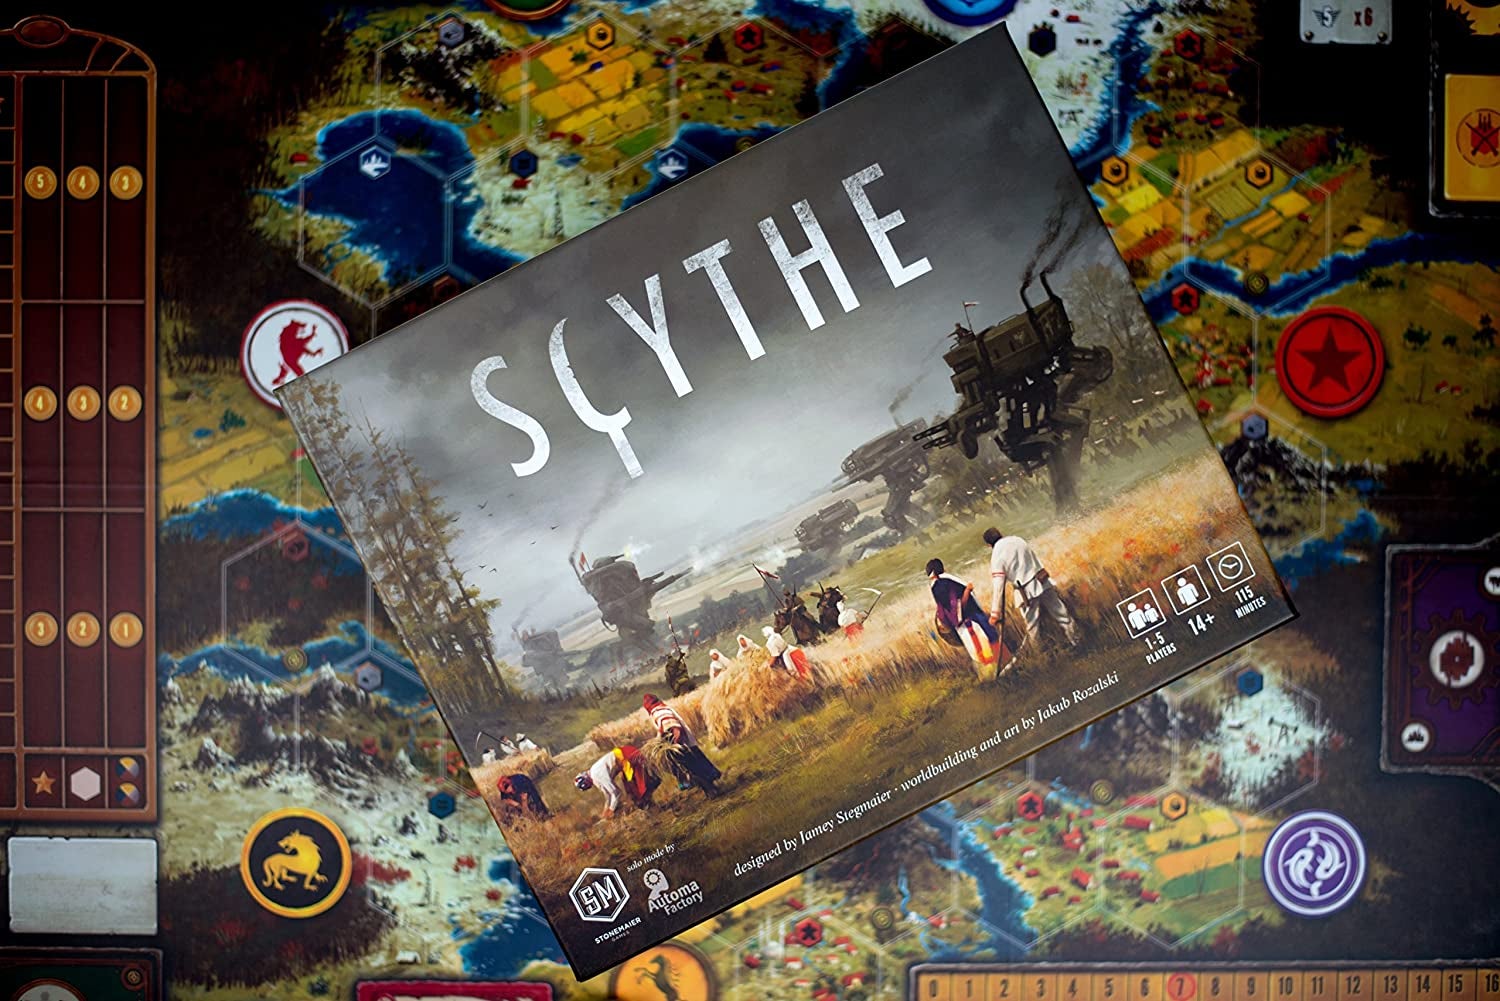 the scythe box on top of the scythe game board